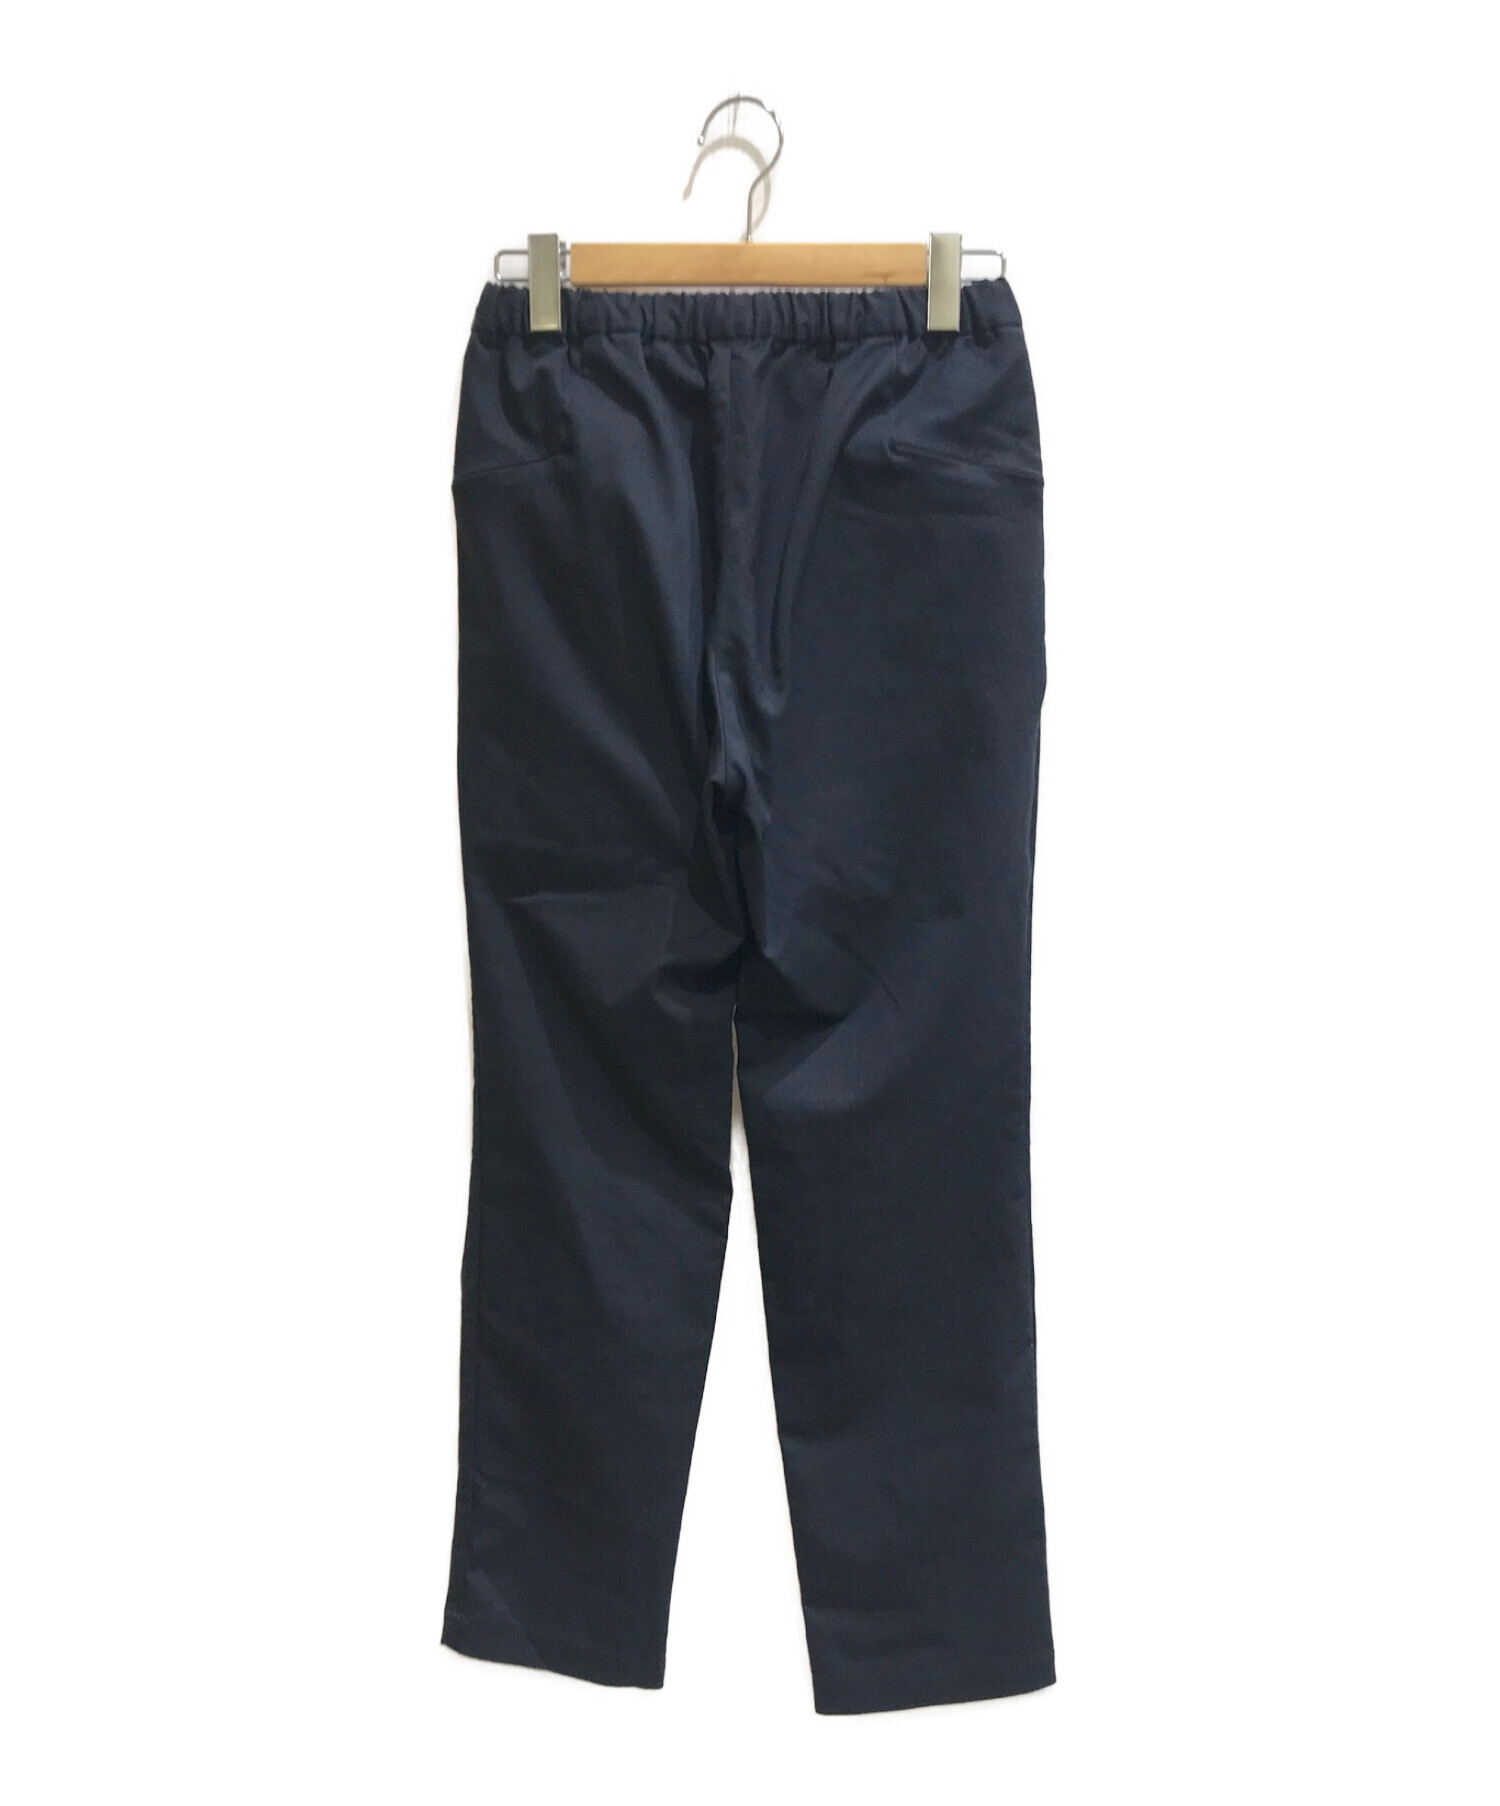 teatora (テアトラ) wallet pants / ウォレットパンツ ネイビー サイズ:46